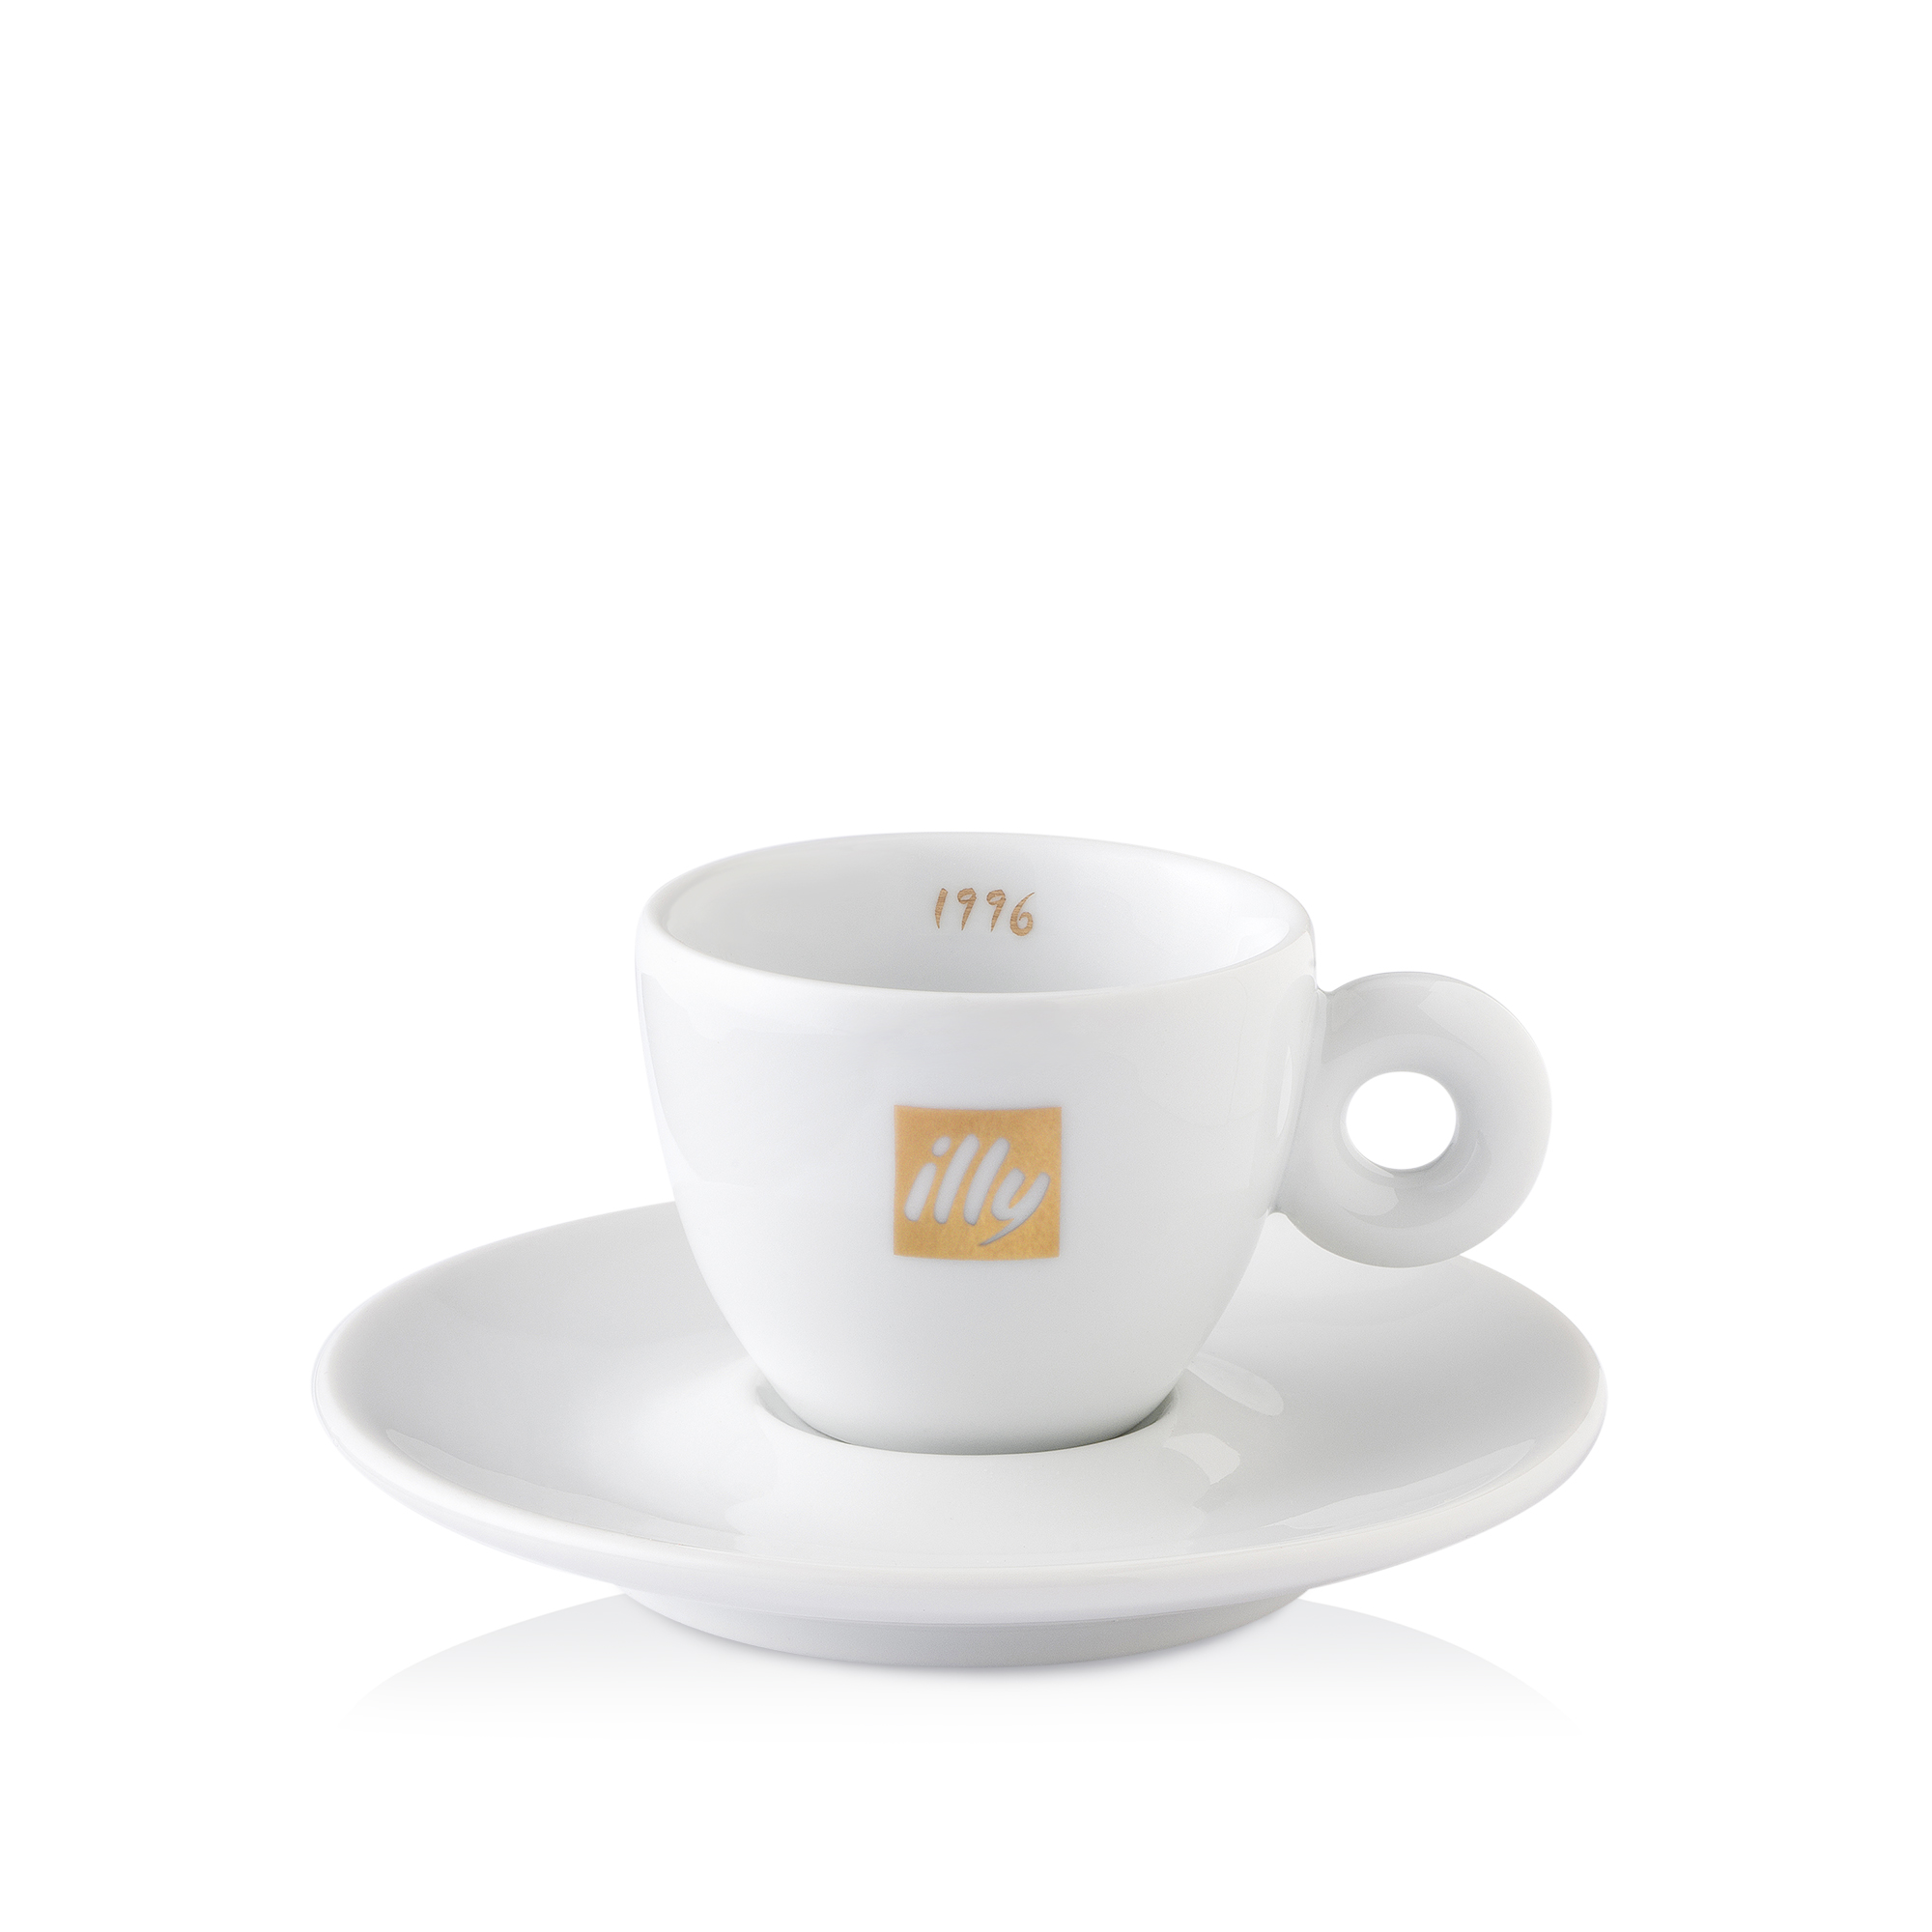 2 Jubiläumsdosen zum 90. Geburtstag mit CLASSICO Kaffee (Bohnen und gemahlen) inkl. Espressotassen